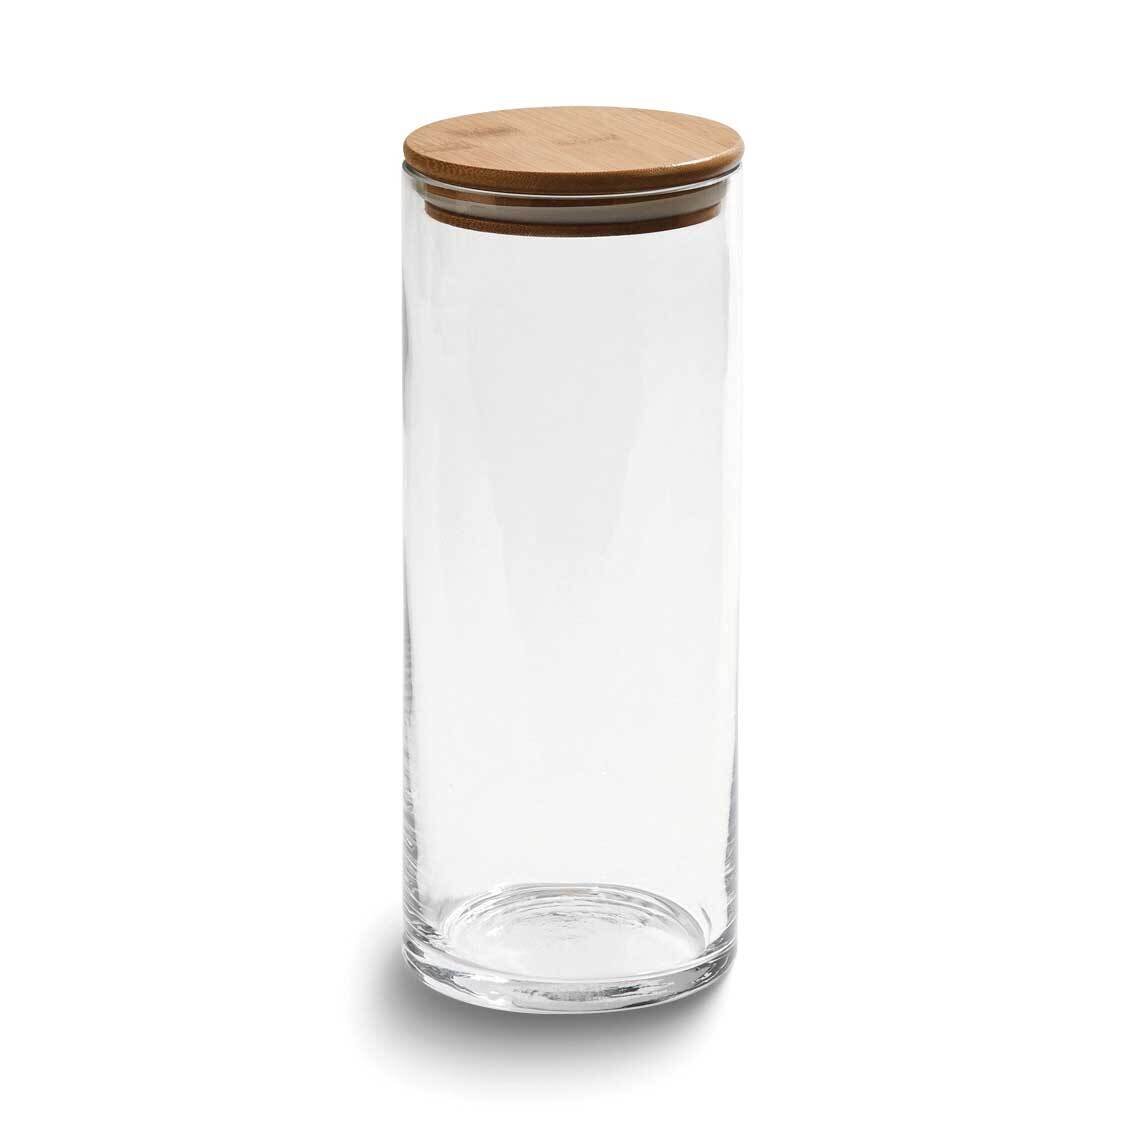 64oz Glass Storage Jar with Bamboo Lid GM24002